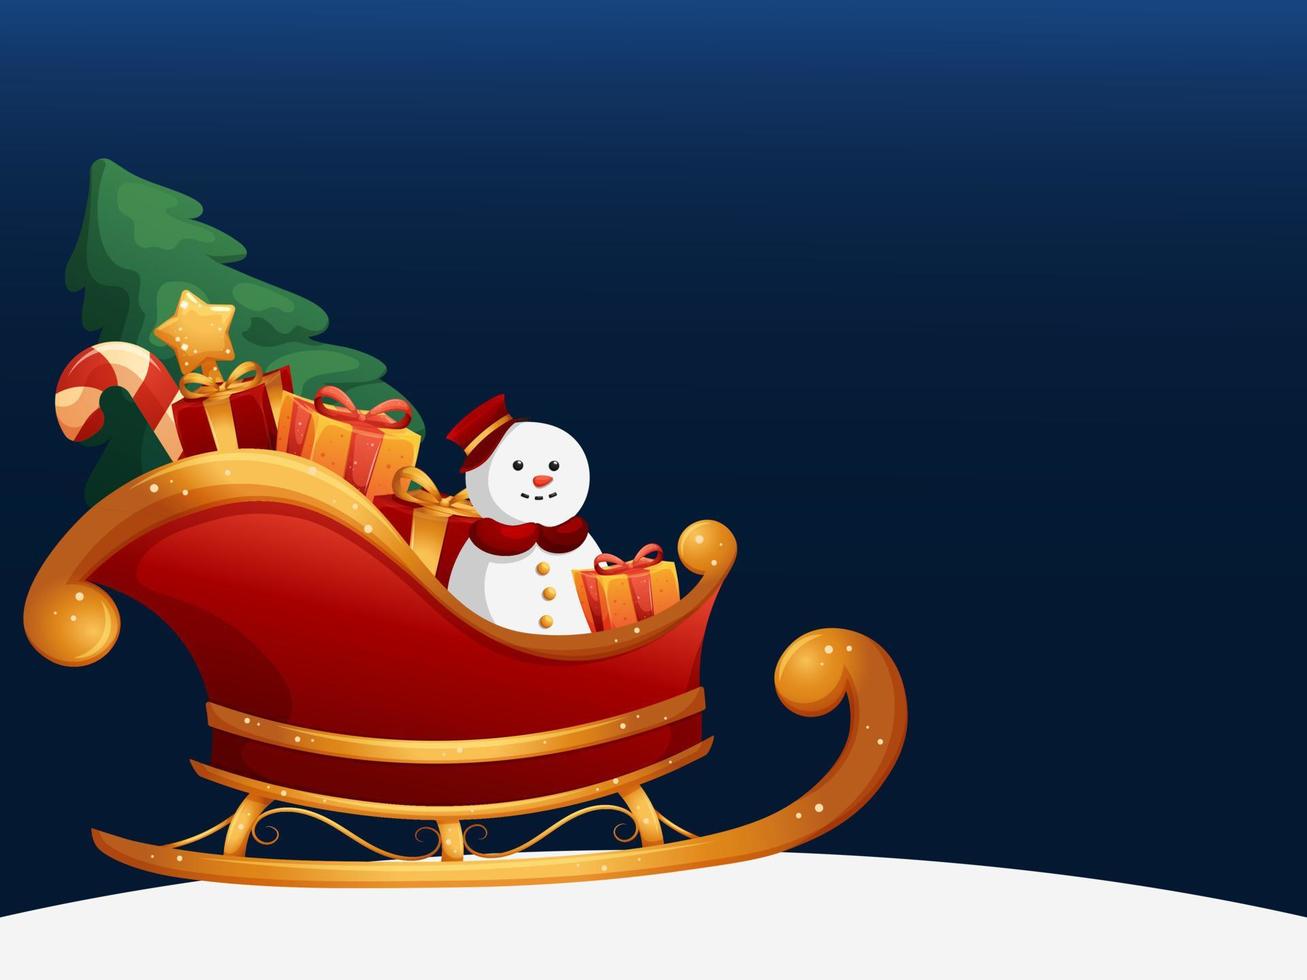 fundo de inverno com trenó de papai noel dos desenhos animados, boneco de neve, árvore de natal e presentes em fundo azul escuro vetor